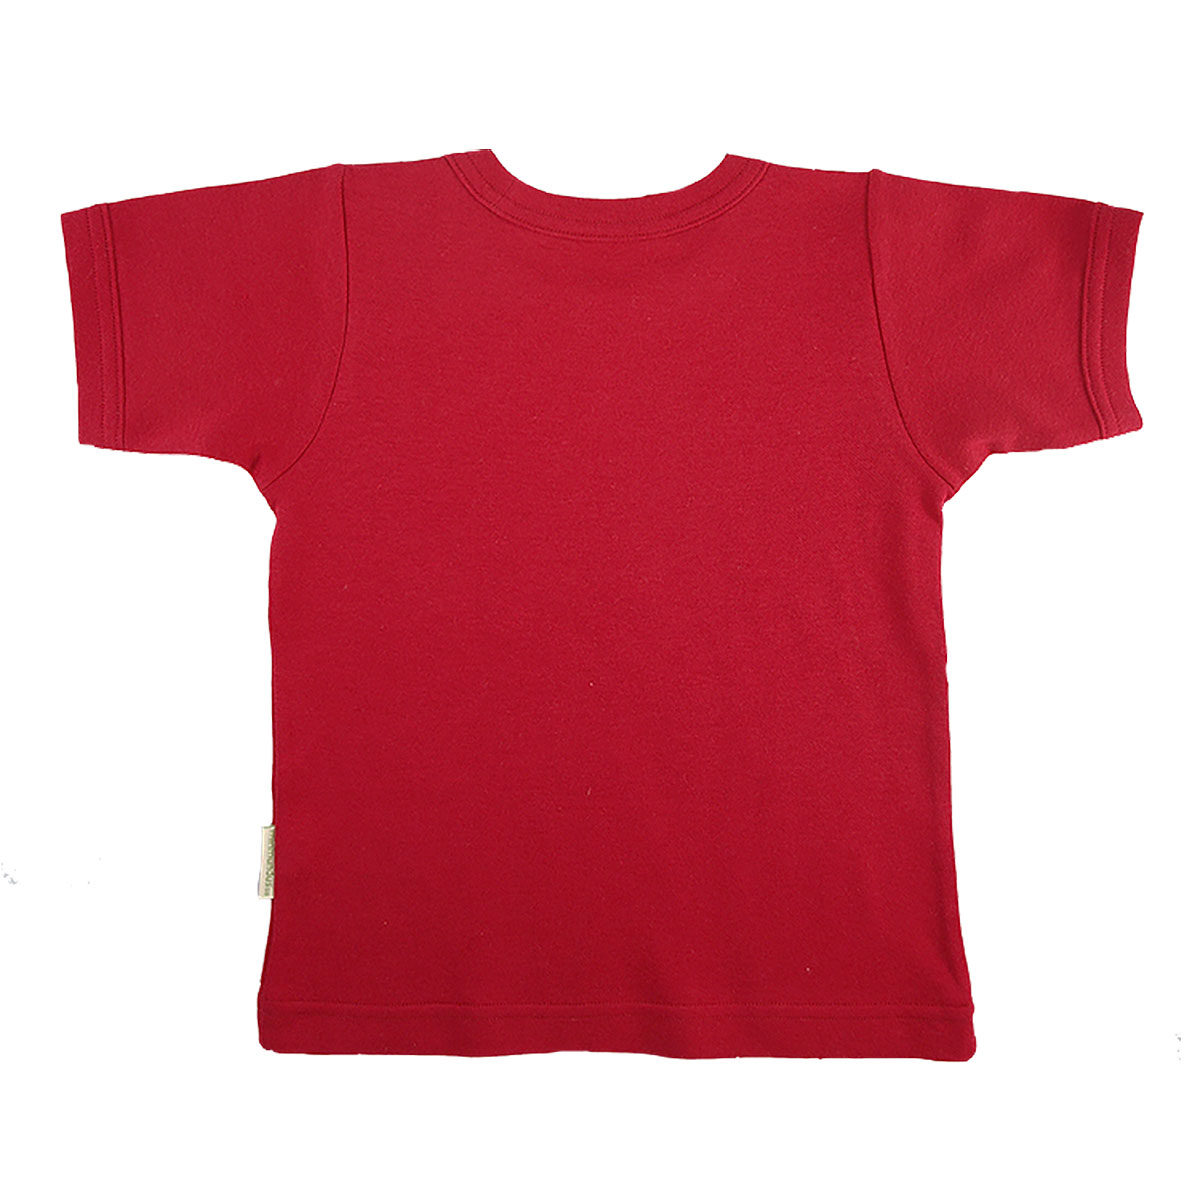 Tim&Teja t-shirt tröja med kort ärm 100% ekologisk bomull ekologiskt färgad röd